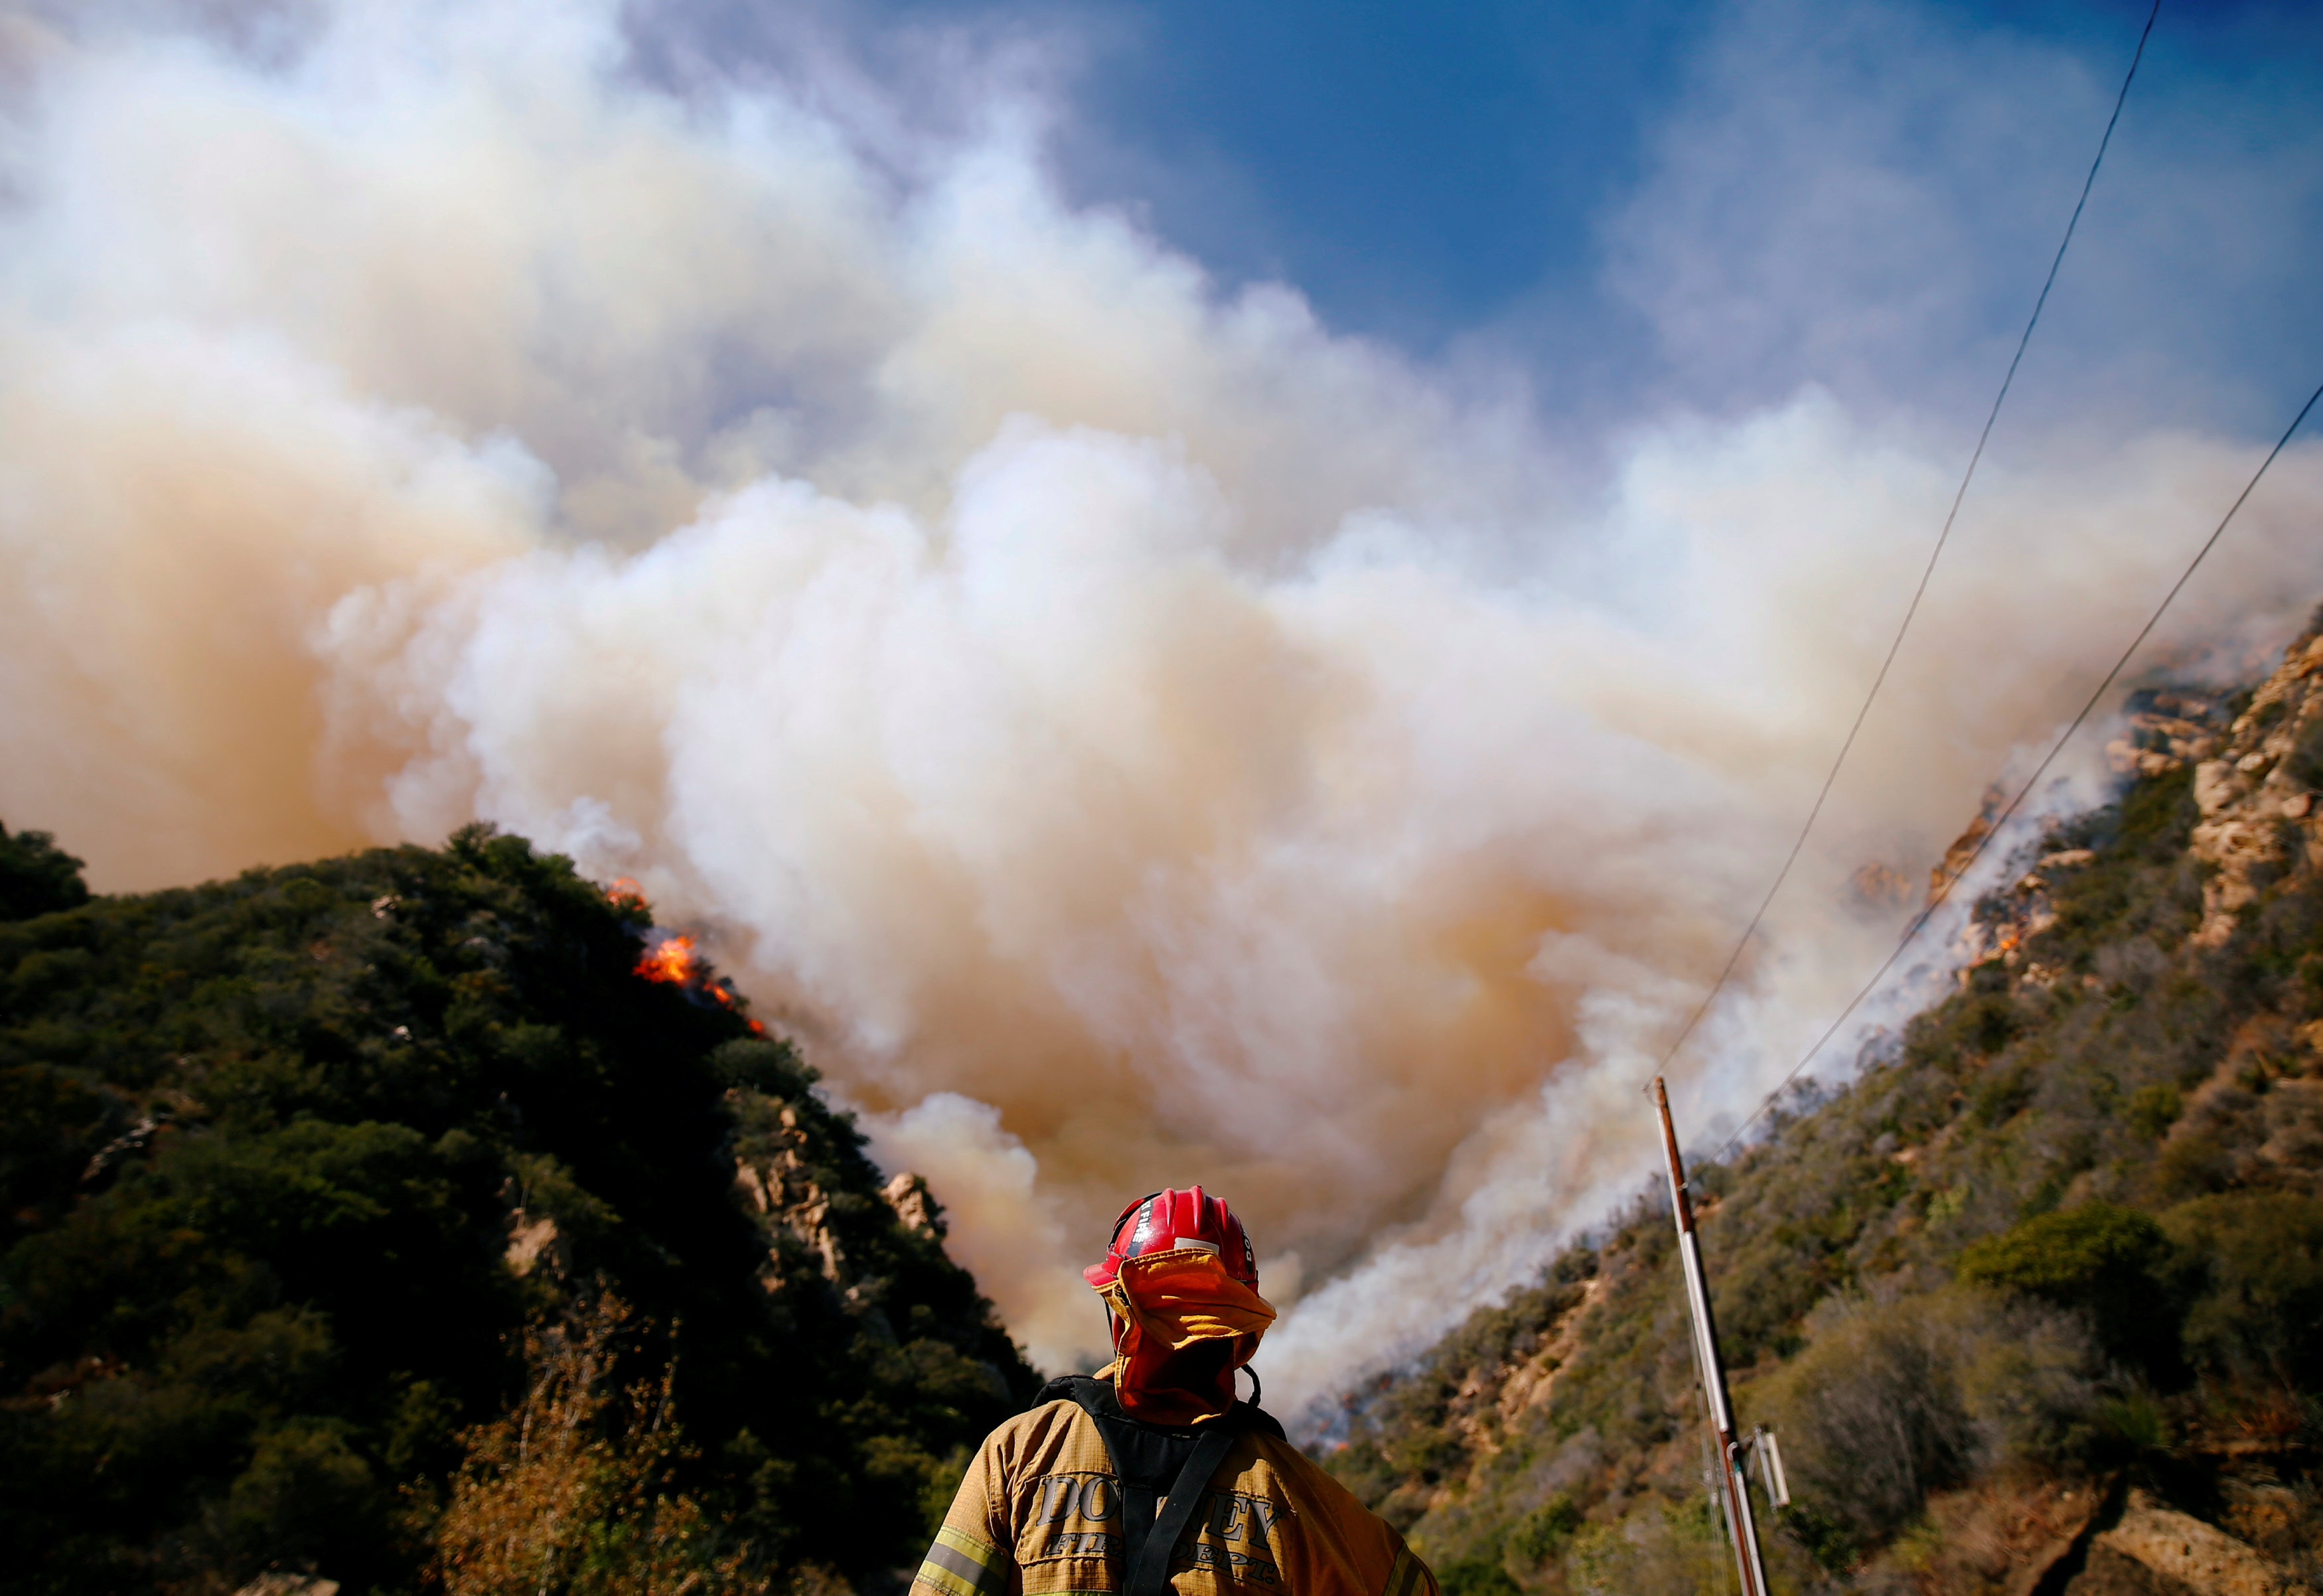 California: Suman 74 muertos y 1,011 desaparecidos por incendios forestales